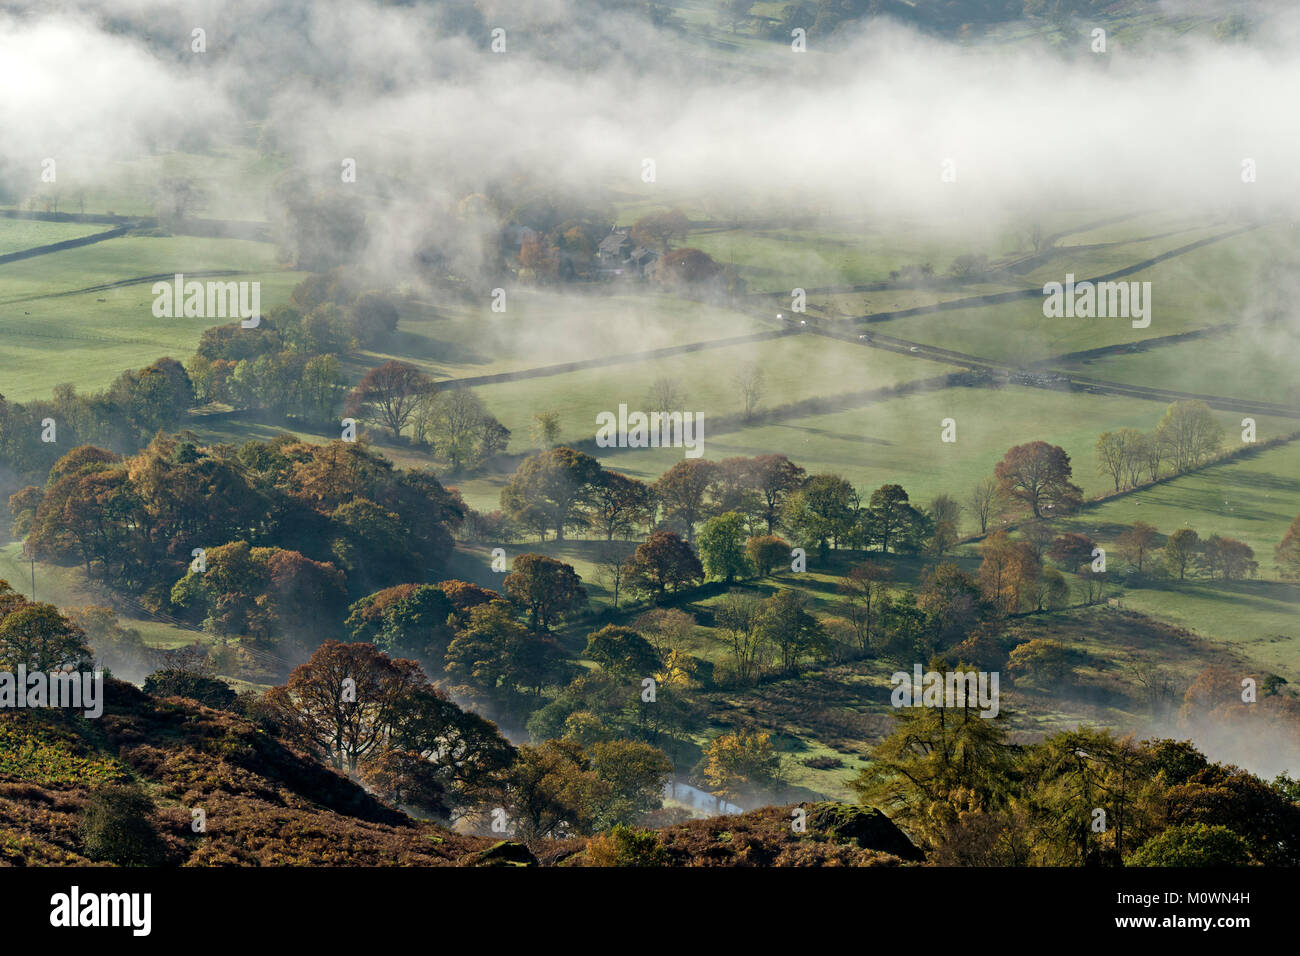 De haut en bas sur le faible niveau de la brume matinale dans la vallée Patterdale dans le Lake District, Cumbria, England, UK Banque D'Images